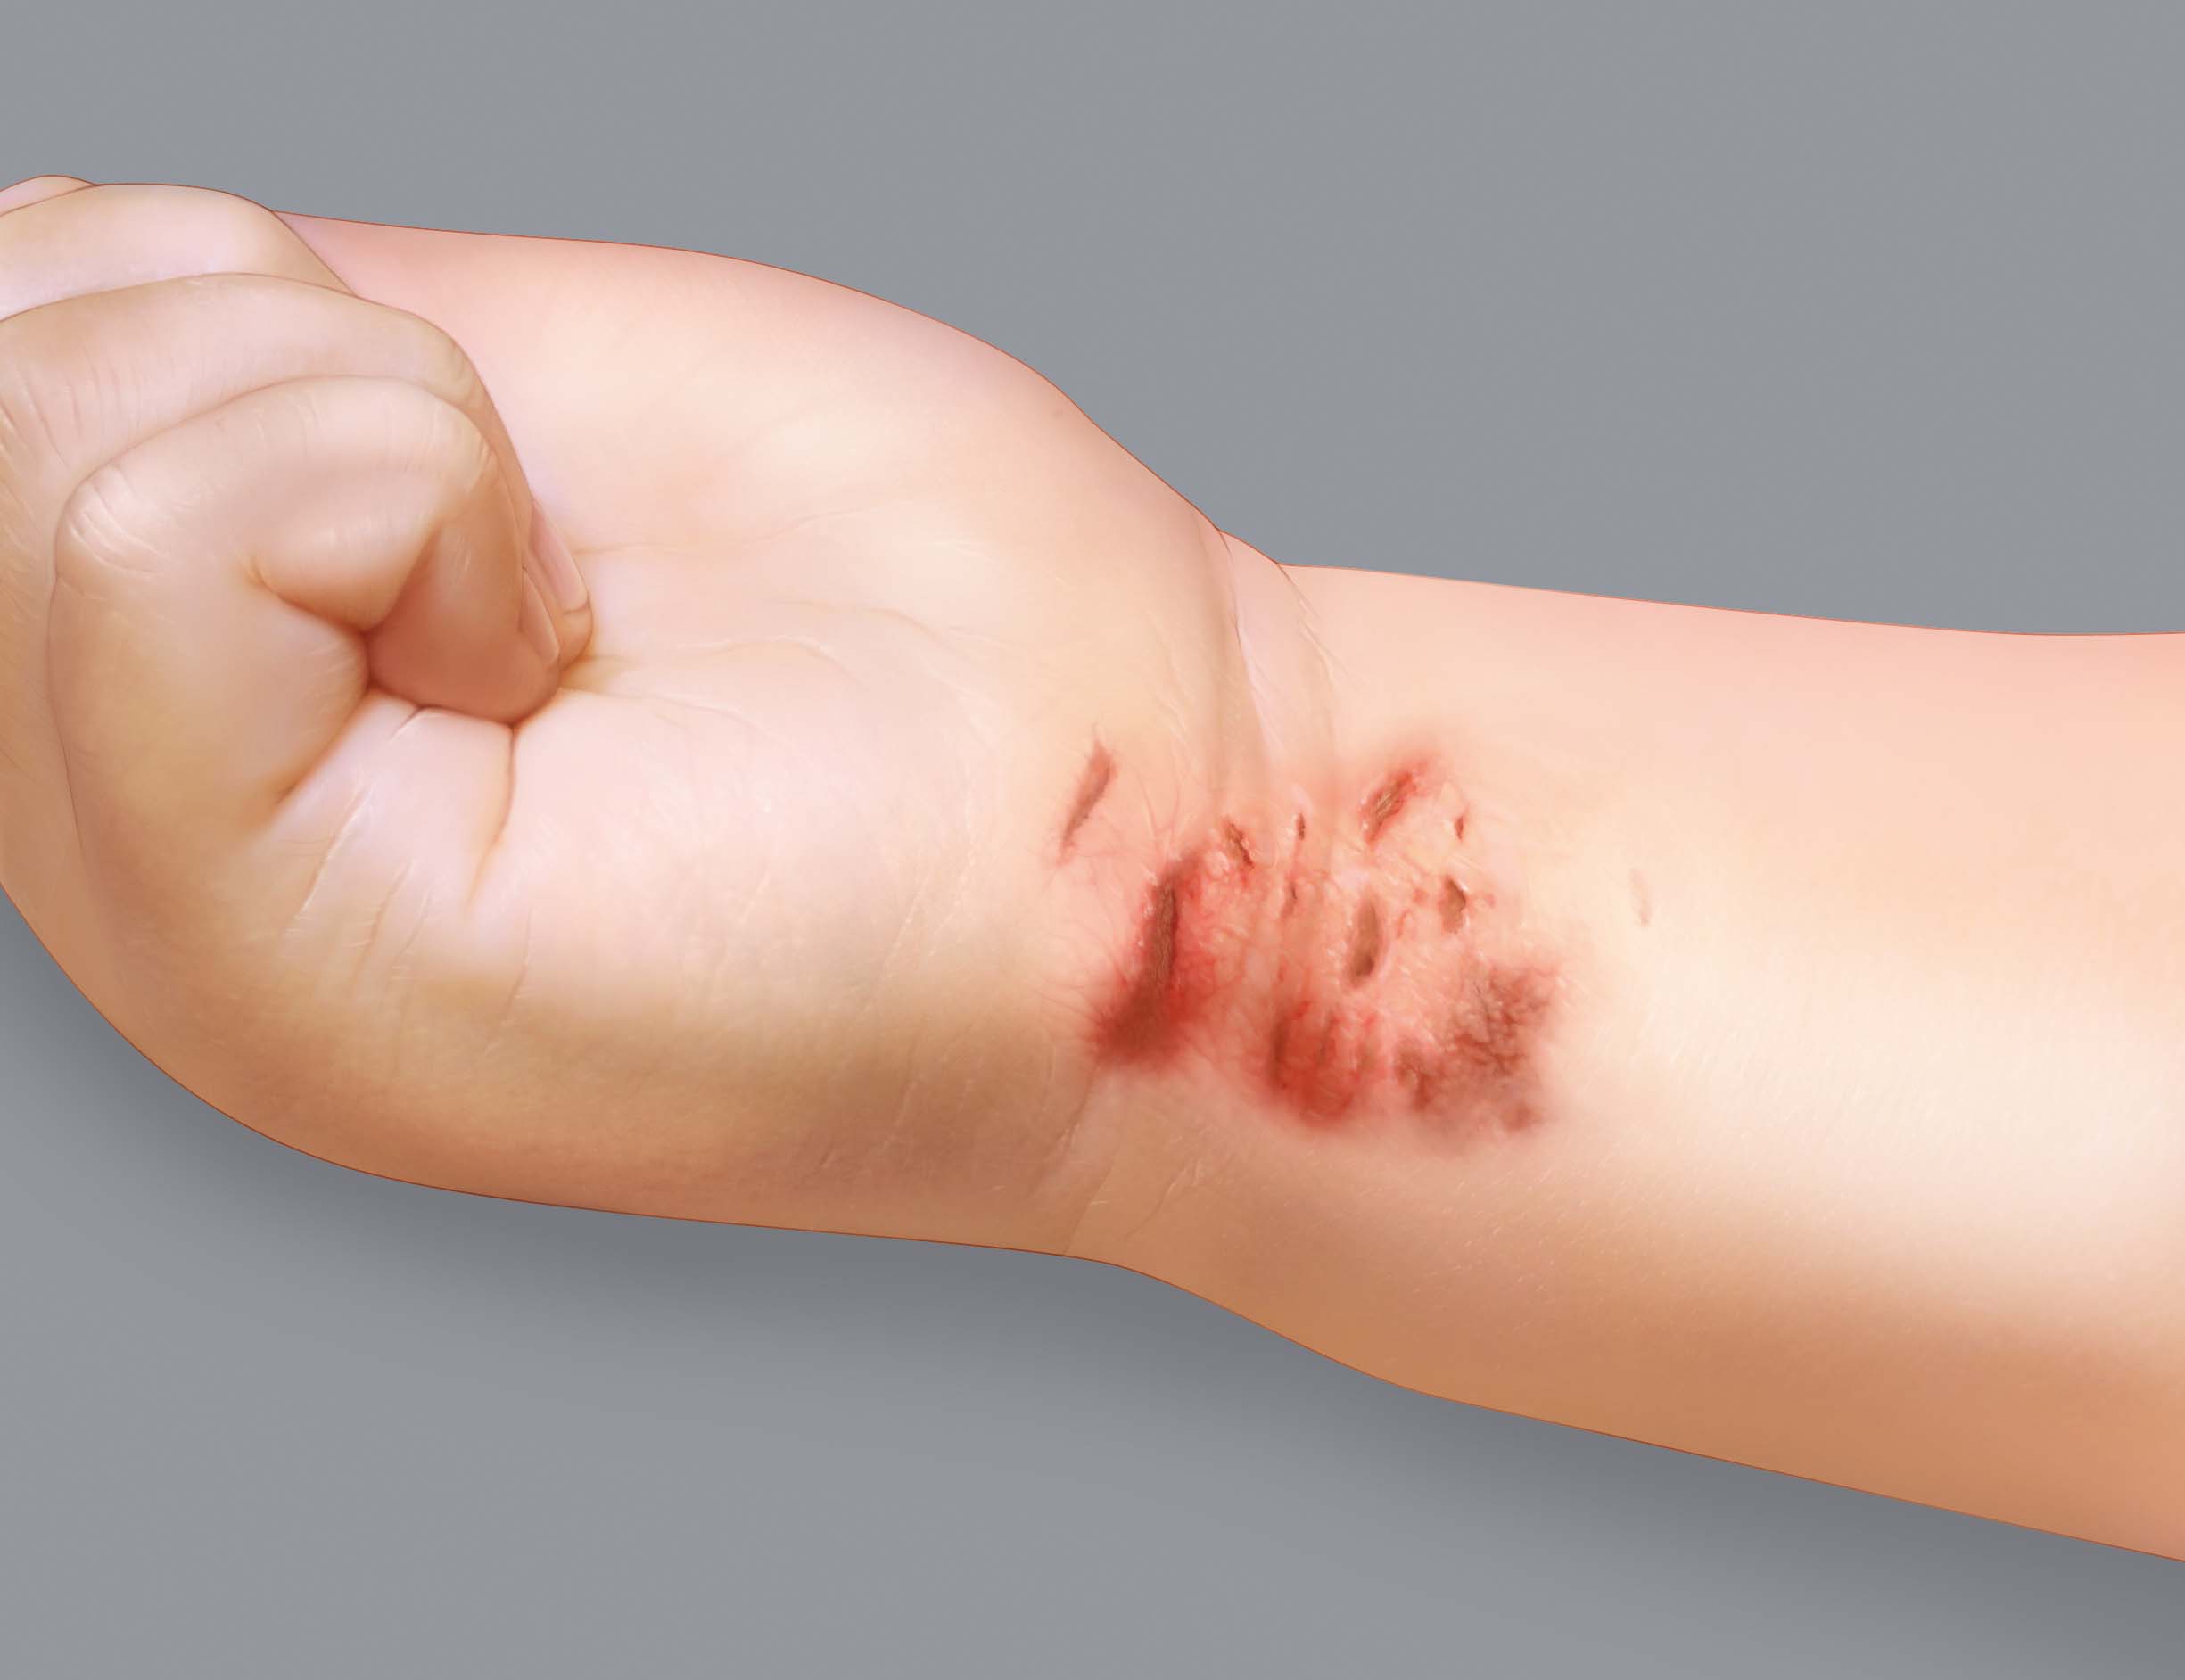 Sintomas do eczema atópico: lesões de coceira ou escoriação